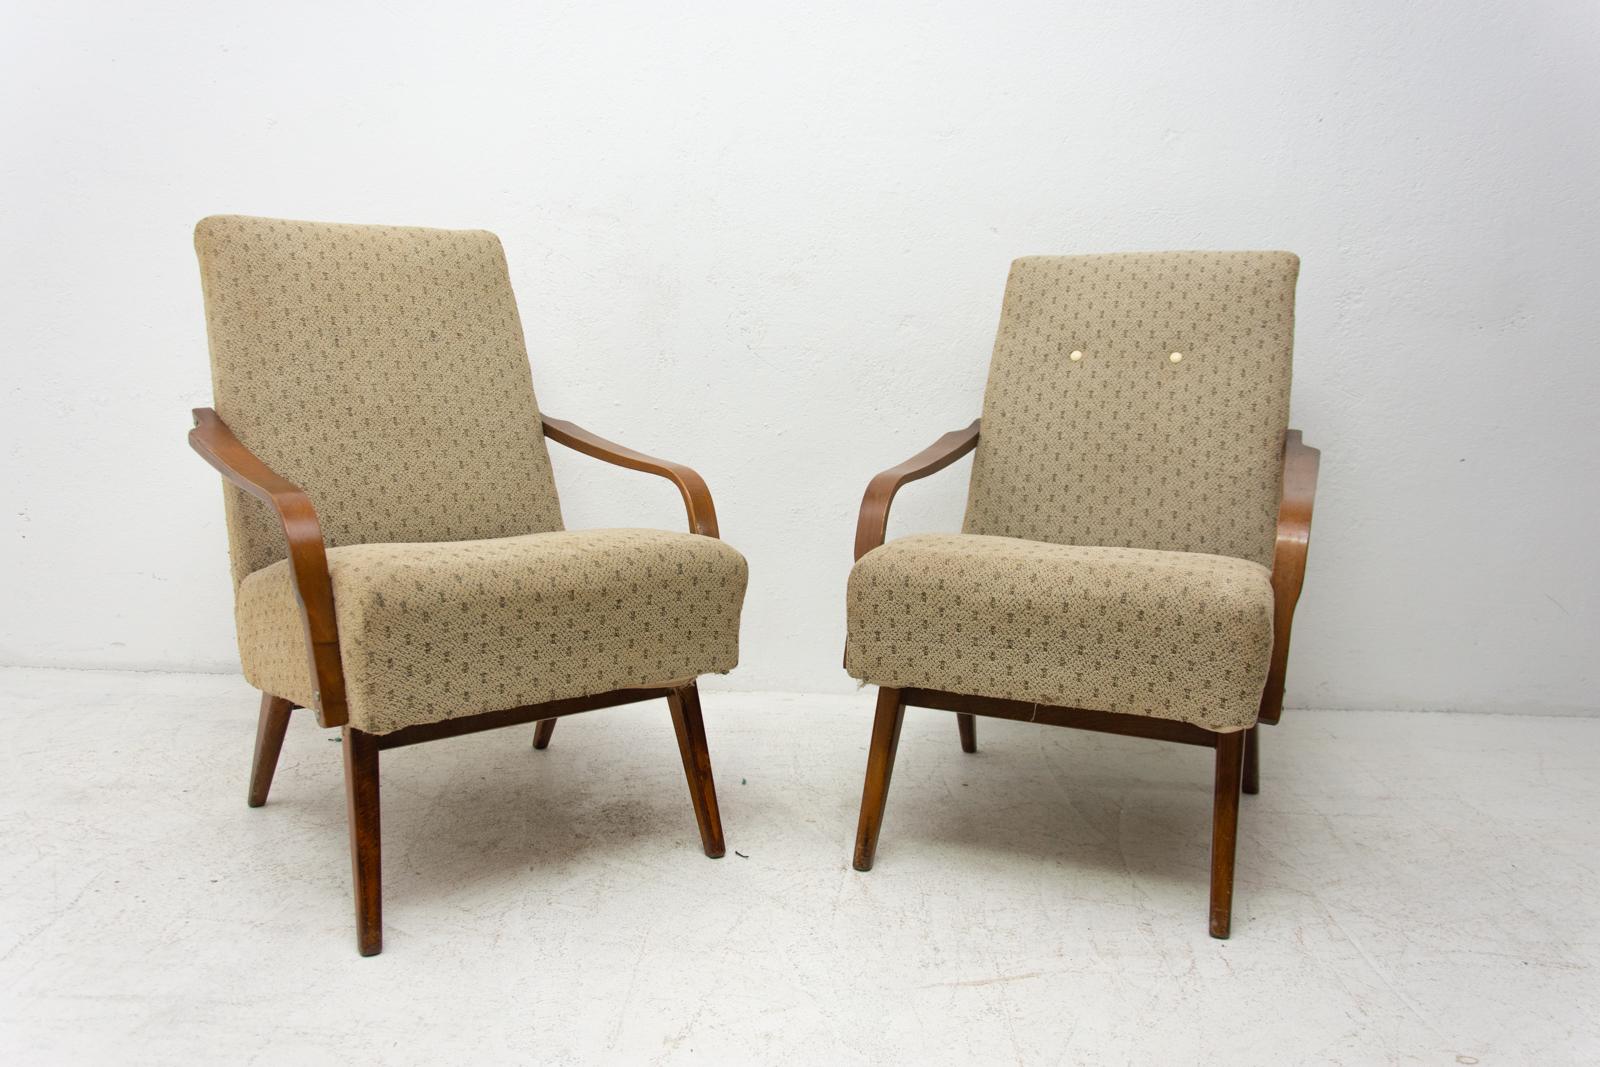 Ces fauteuils en bois courbé ont été conçus par Jaroslav Šmídek et fabriqués dans l'ancienne Tchécoslovaquie dans les années 1960.

Les chaises sont stables et confortables. Ils sont en bon état vintage, le rembourrage montrant des signes d'âge et